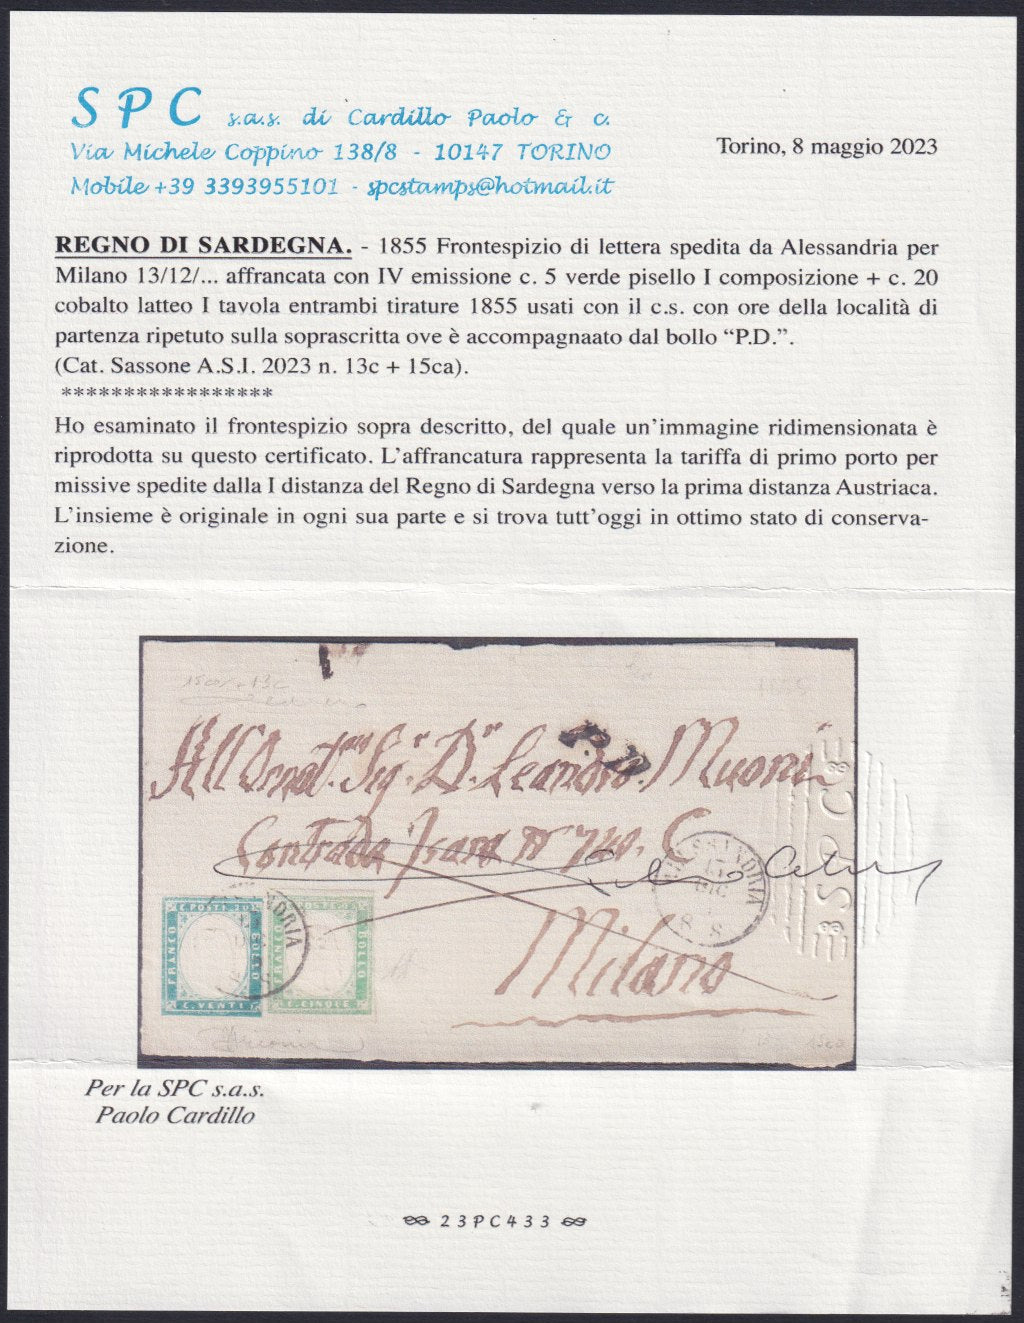 F13-76 - 1856 - IV emissione, Frontespizio di lettera spedita da Alessandria per Milano 13/12/56 affrancata con c. 5 verde Pisello I composizione + c. 20 cobalto latteo (13c + 15ca)